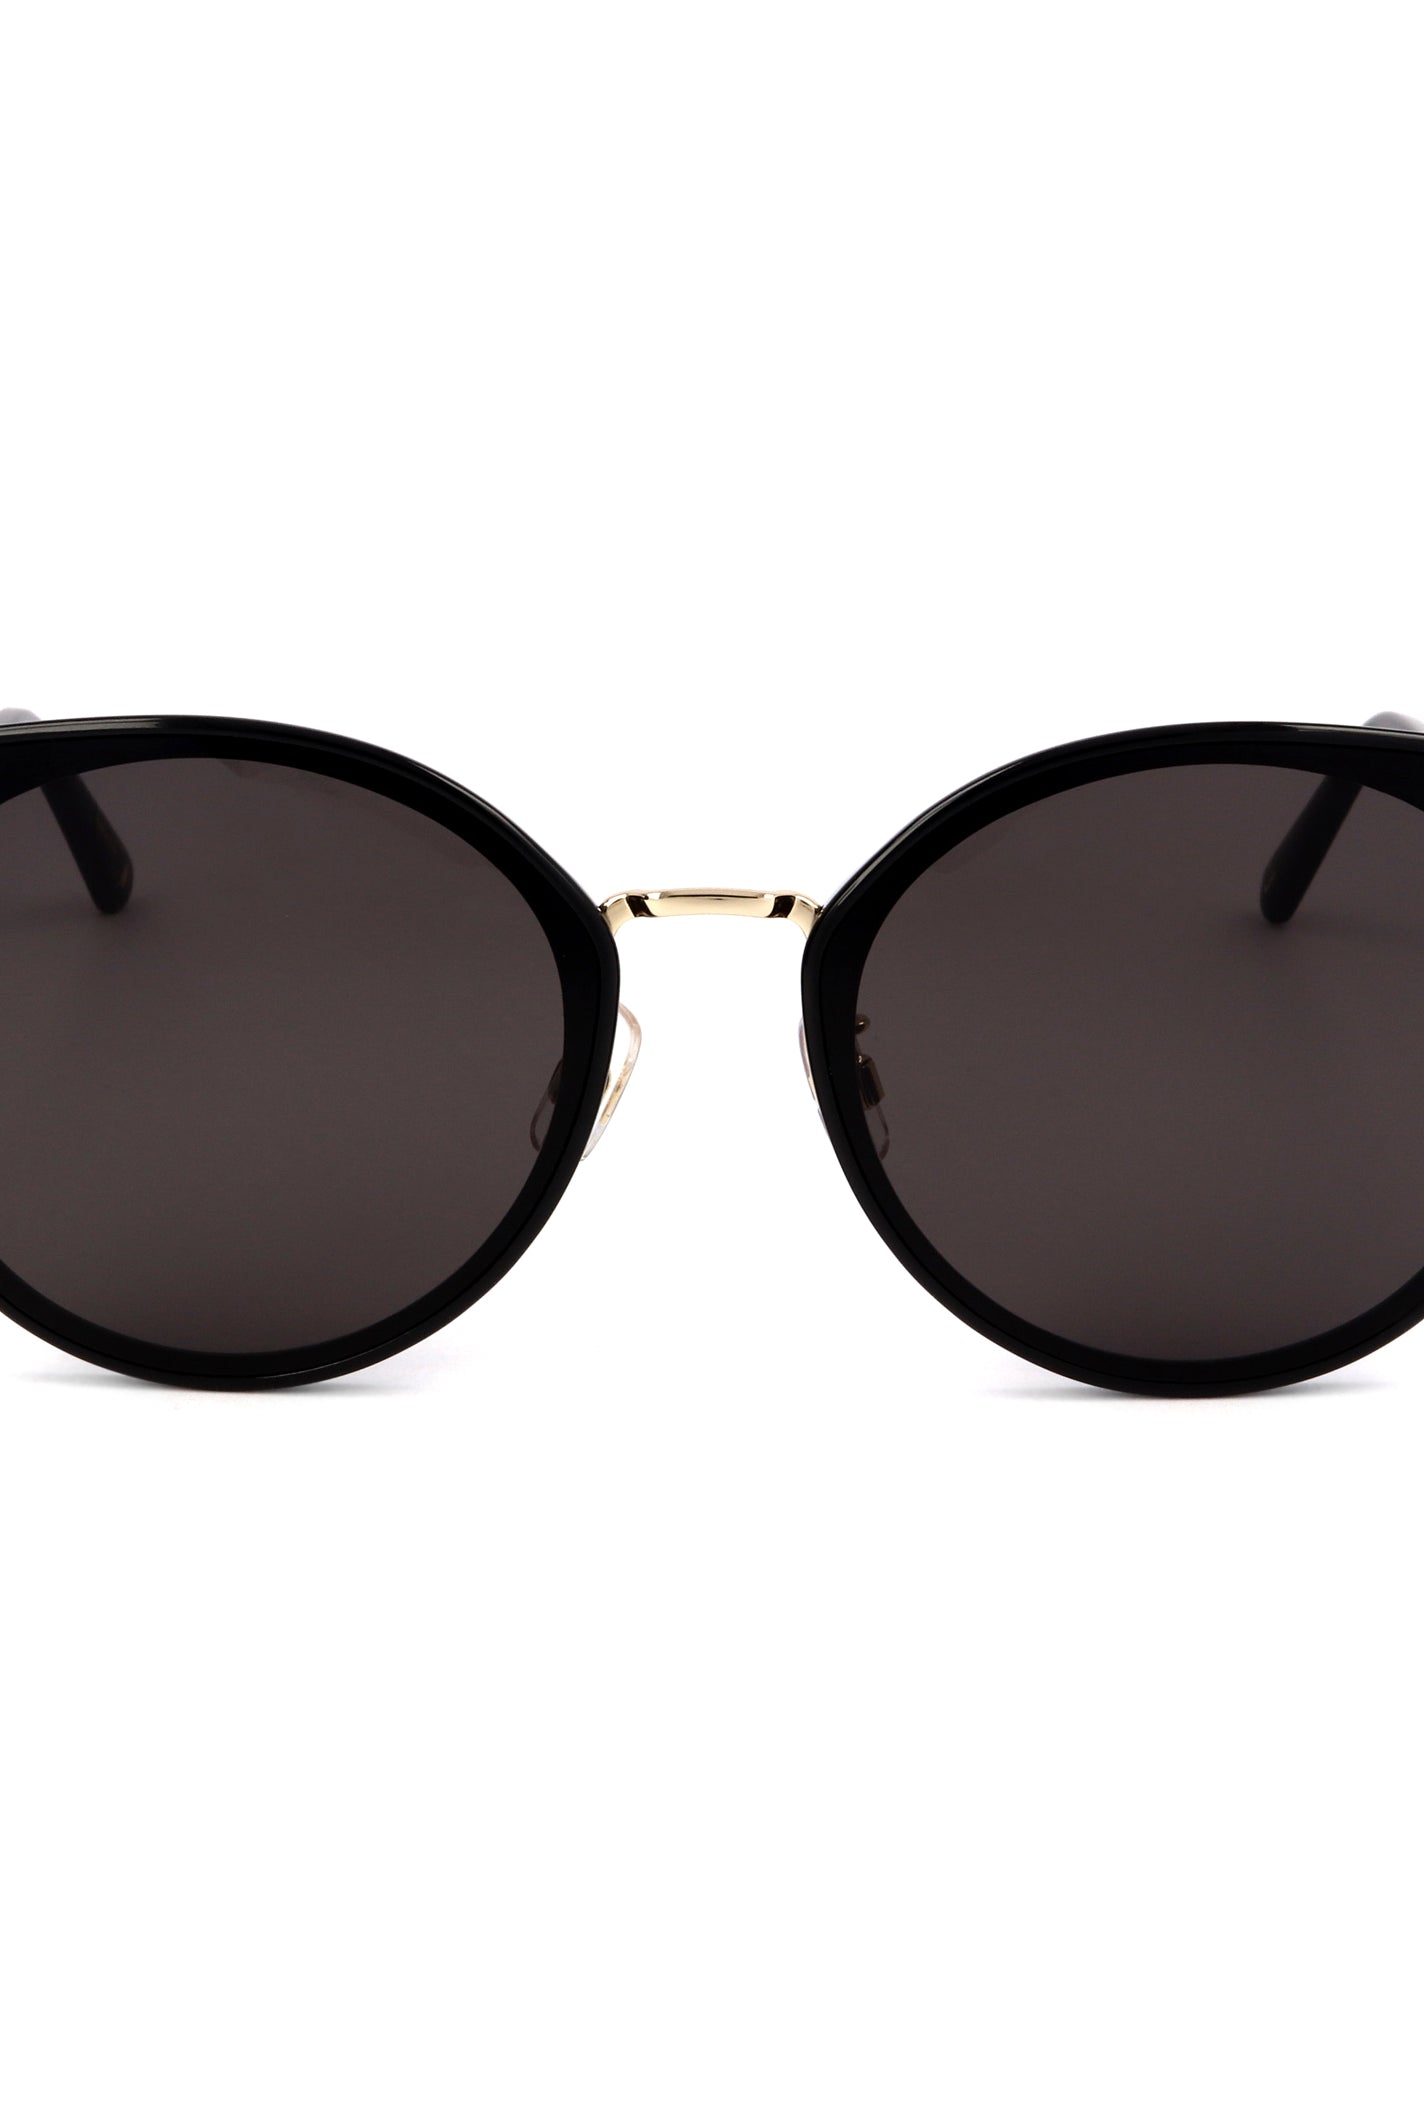 Swarovski - Black & Gold Cat Eye Sunglasses - Swarovski - [product type] - Magpie Style